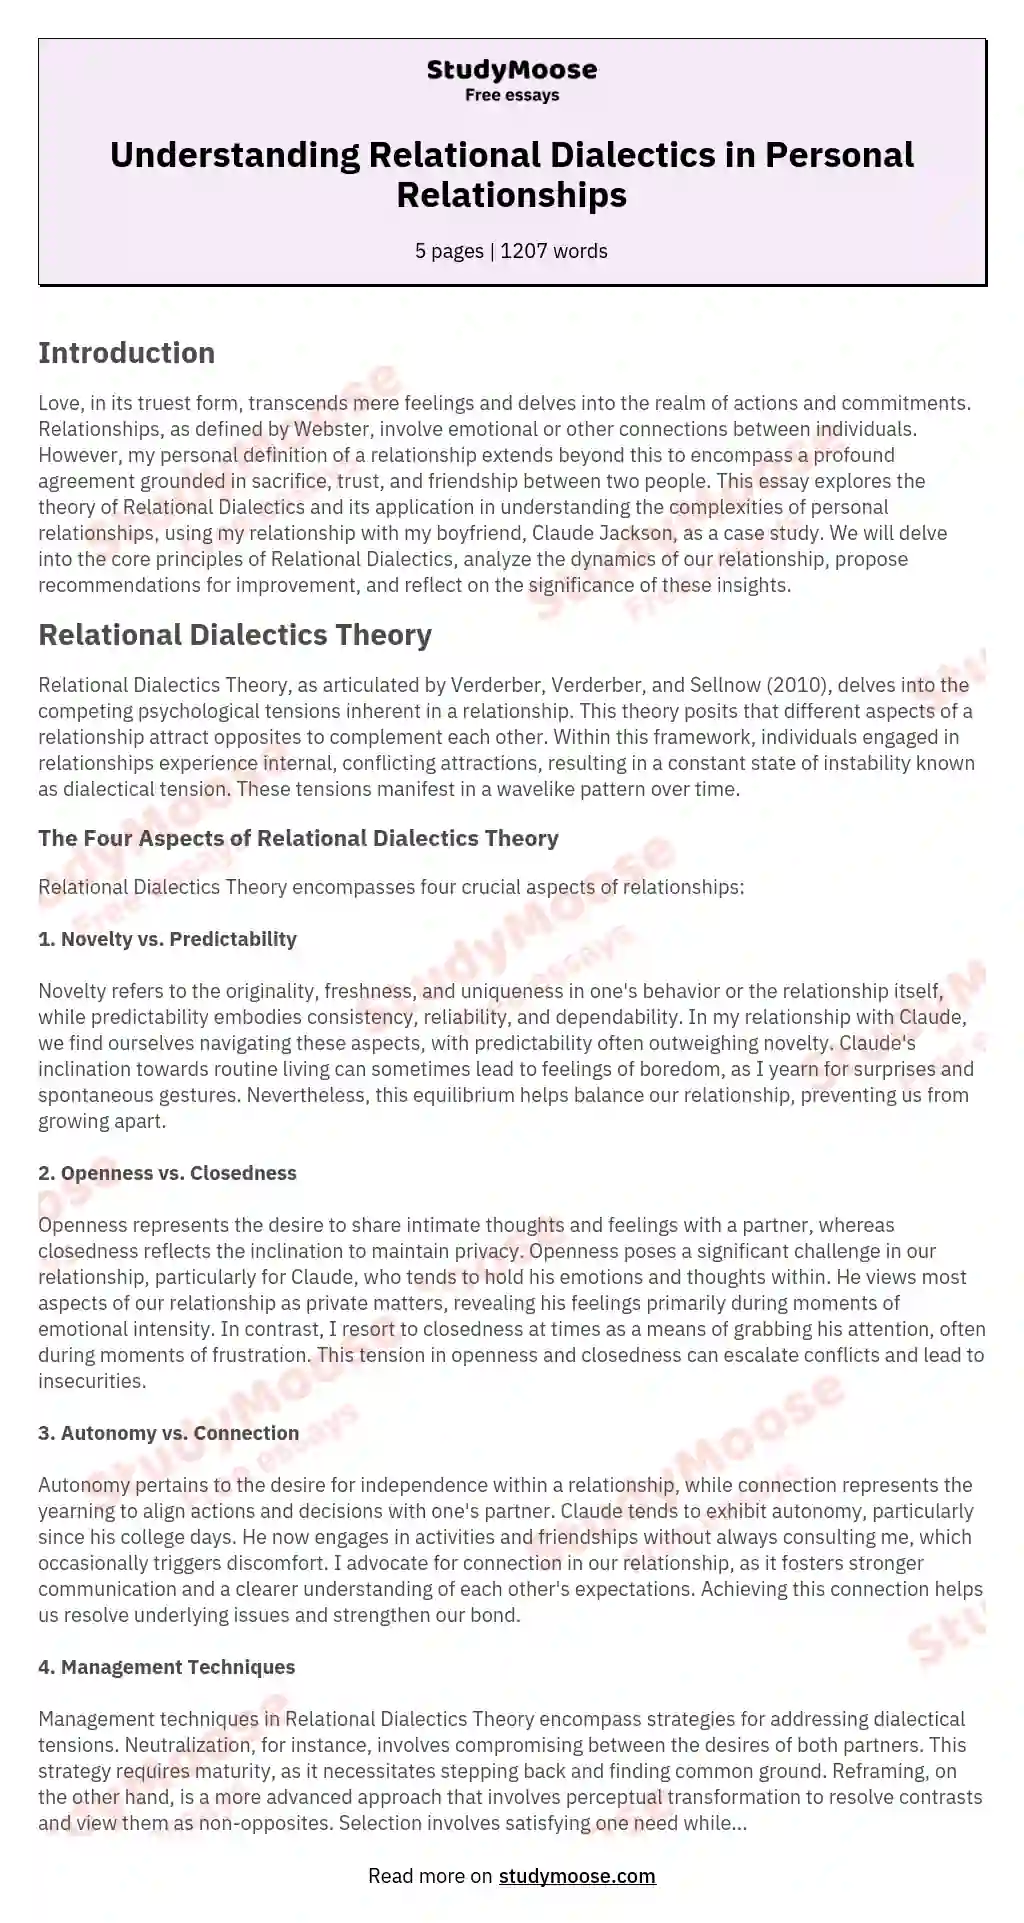 Understanding Relational Dialectics in Personal Relationships essay